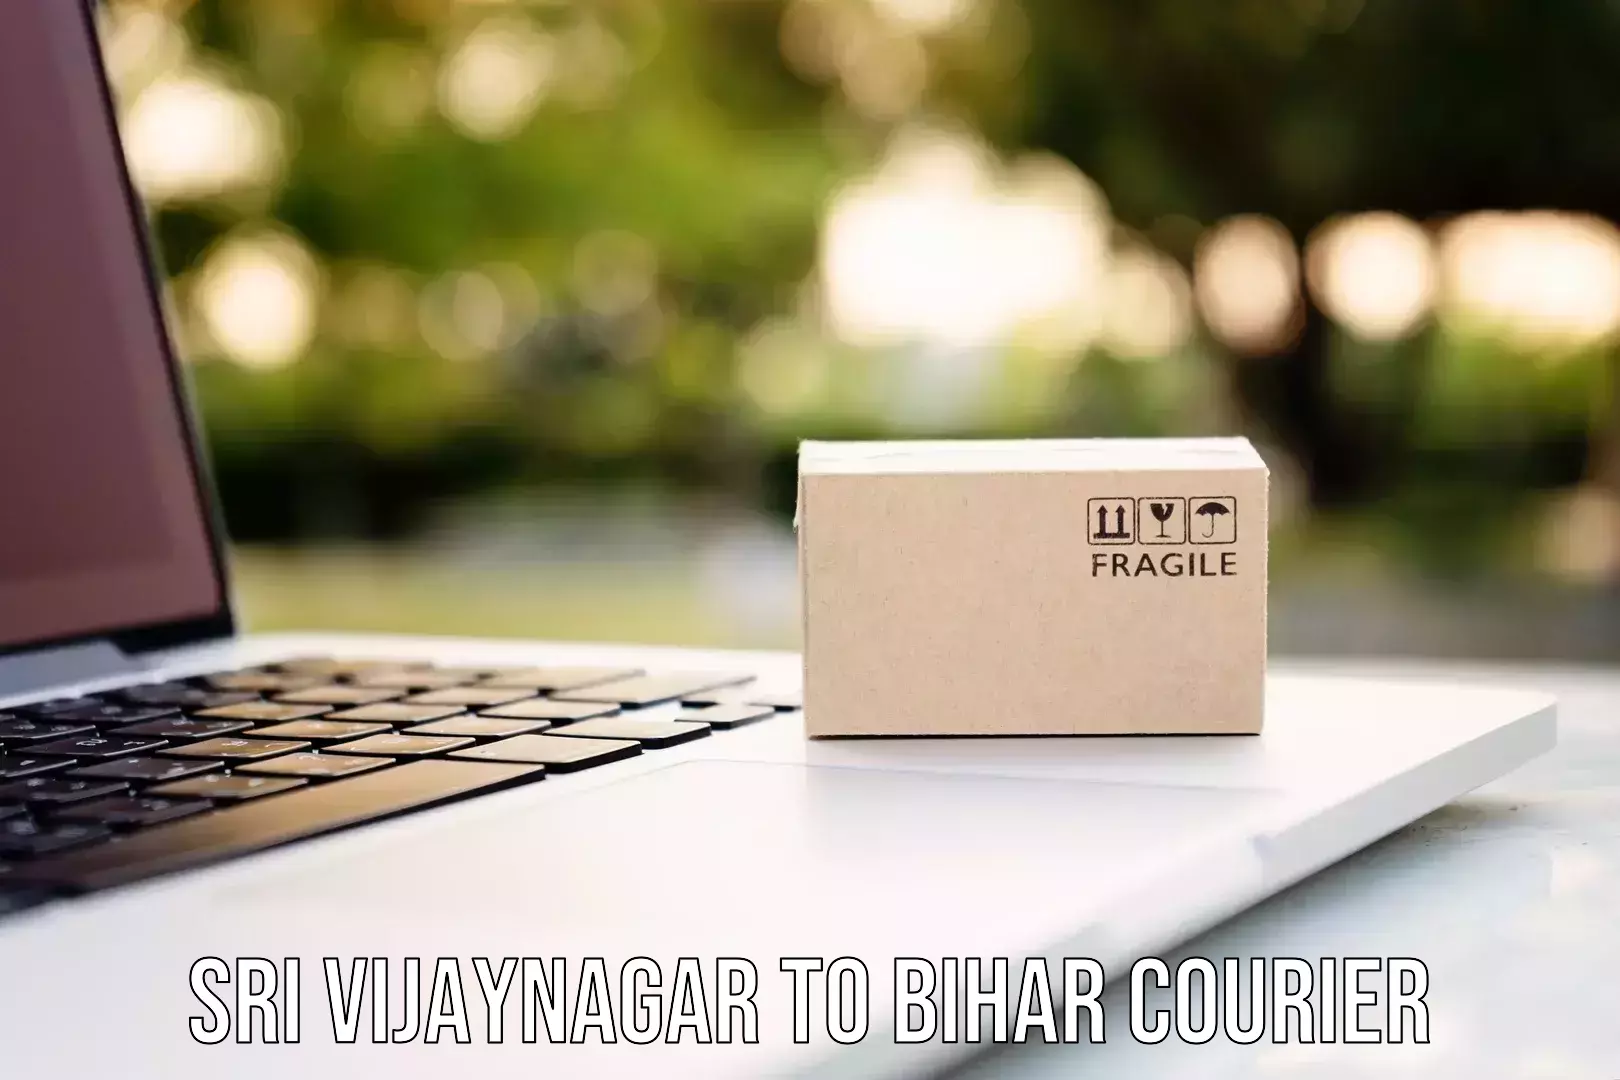 Custom courier packaging Sri Vijaynagar to Bihar